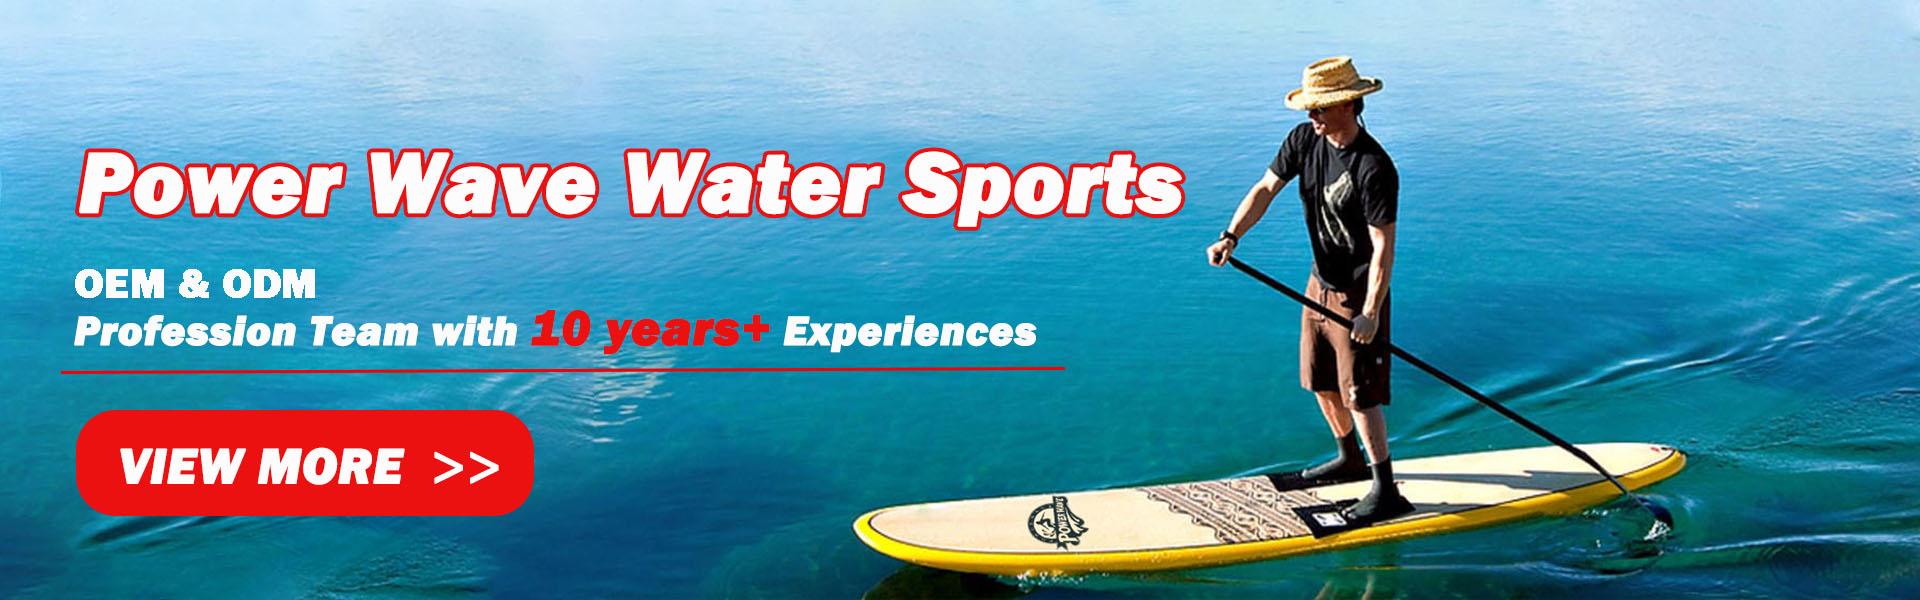 deska surfingowa, płyta miękka, sup,Power Wave Water Sports co.Ltd